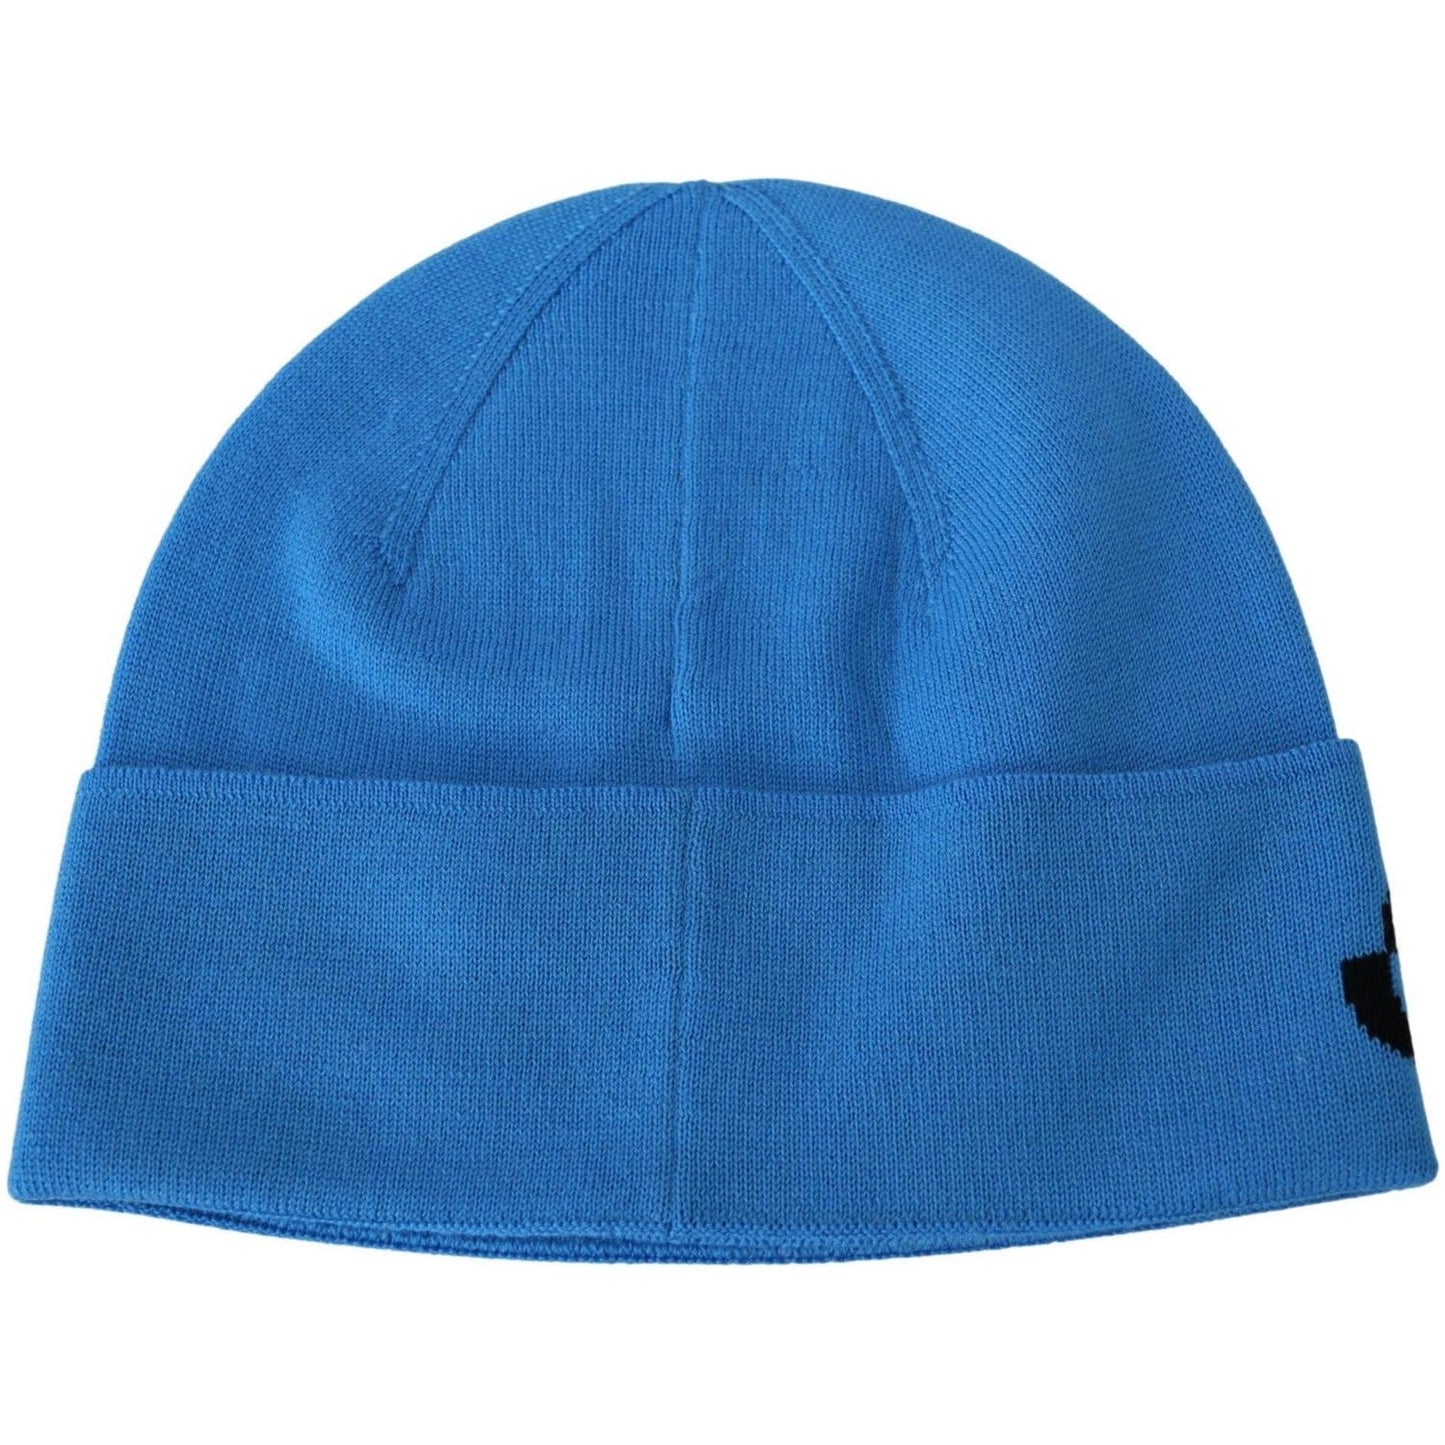 Givenchy Chic Woolen Beanie with Signature Black Logo Beanie Hat blue-wool-unisex-winter-warm-beanie-hat